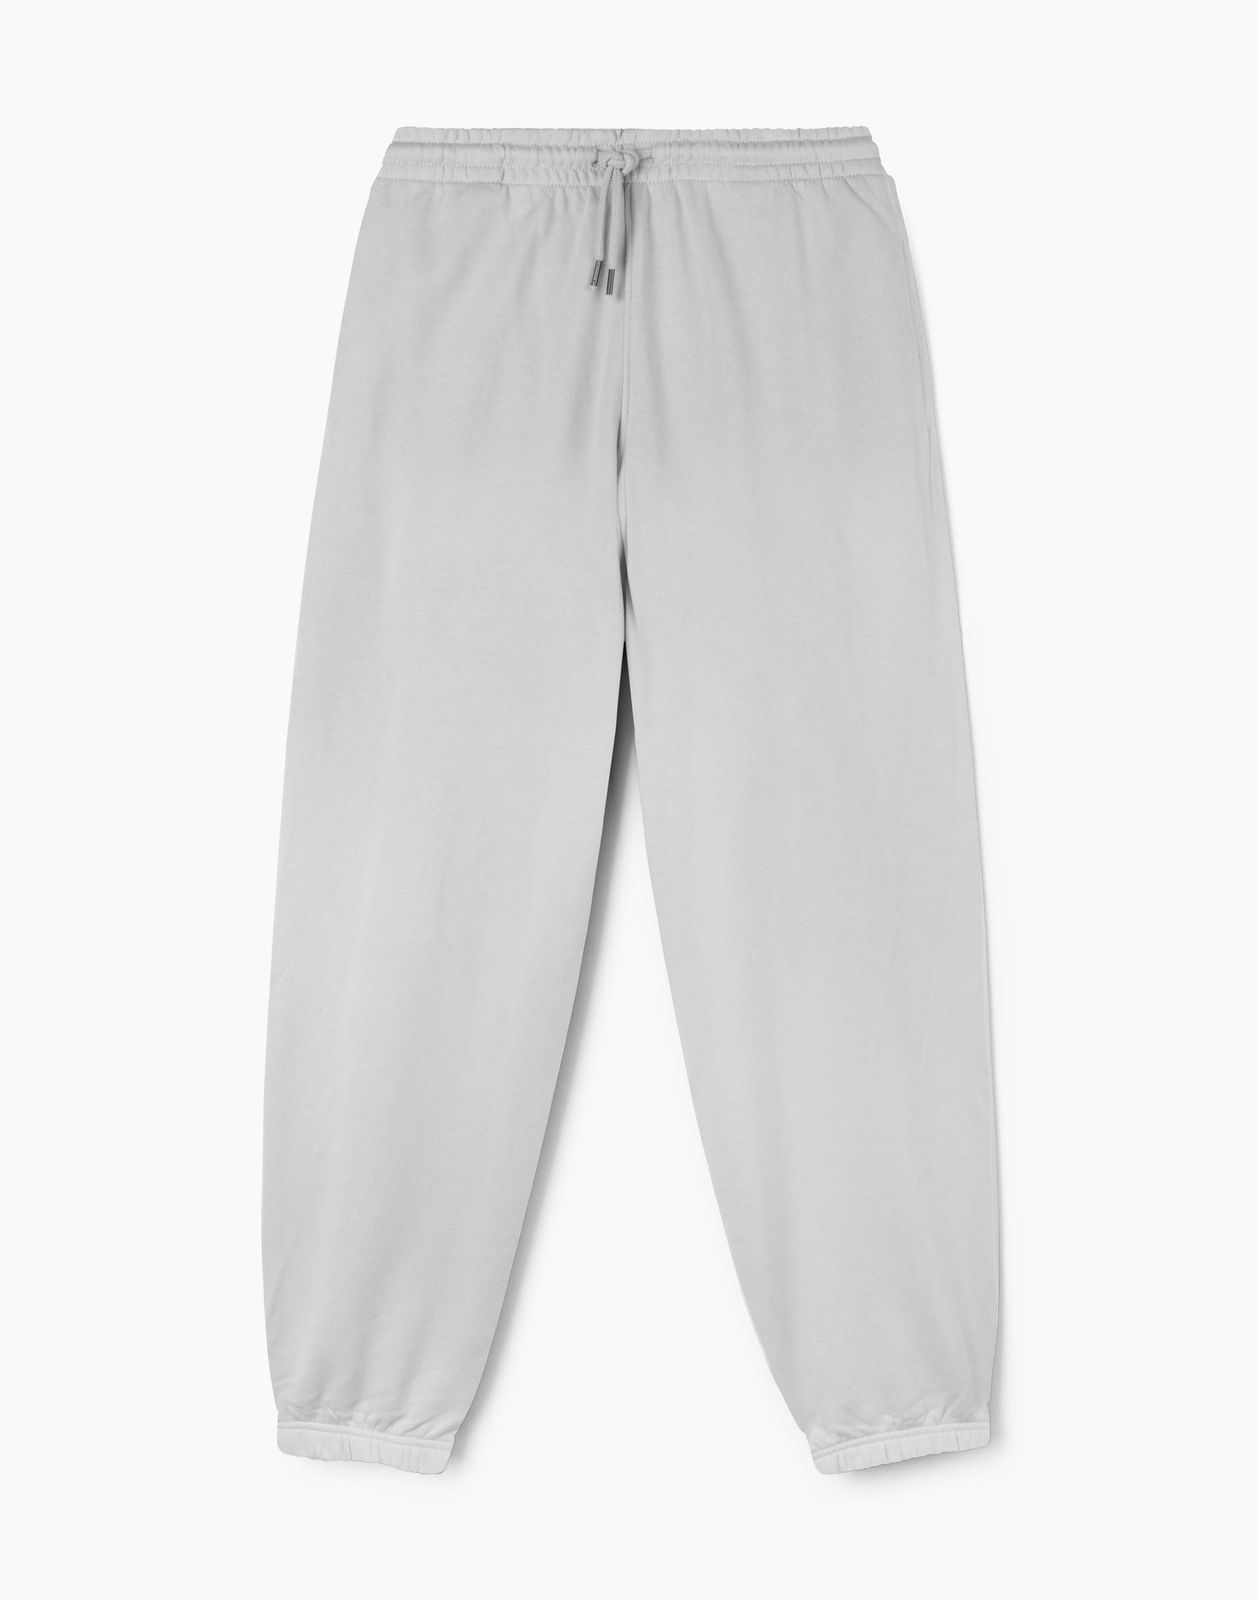 Спортивные брюки мужские Gloria Jeans BAC013026 светло-серый L/182